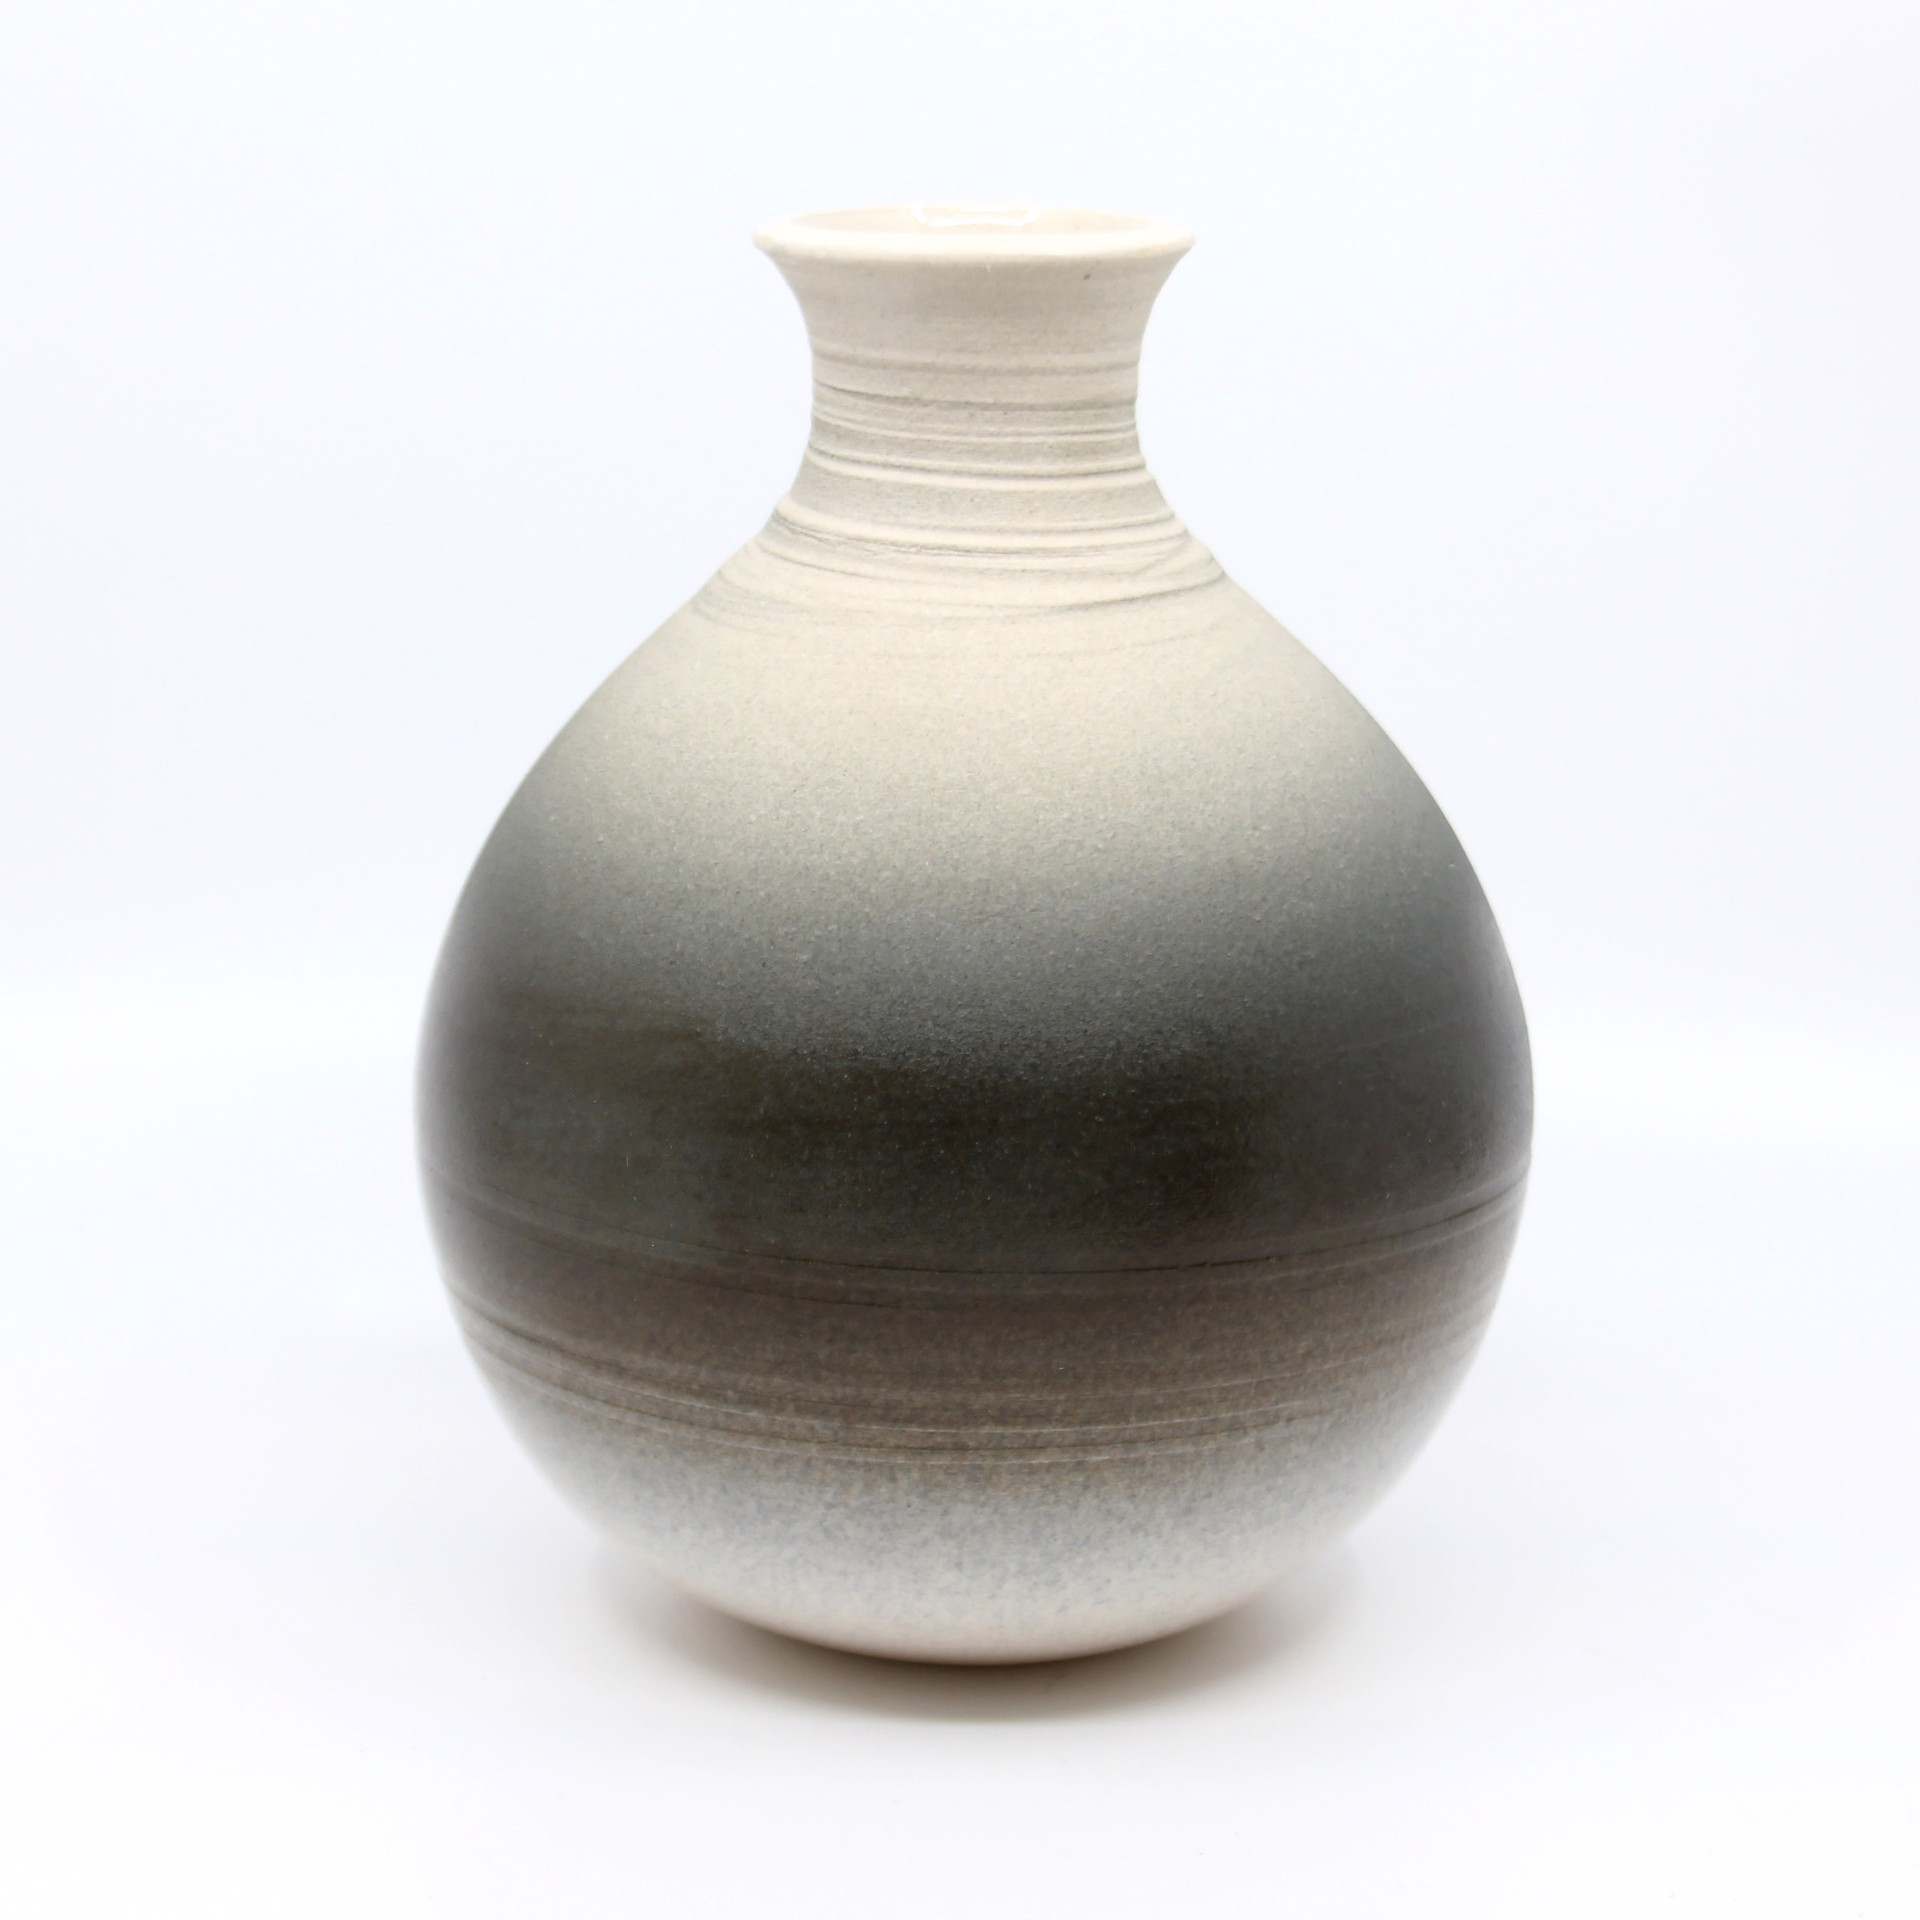 Vase 10 by Heather Bradley